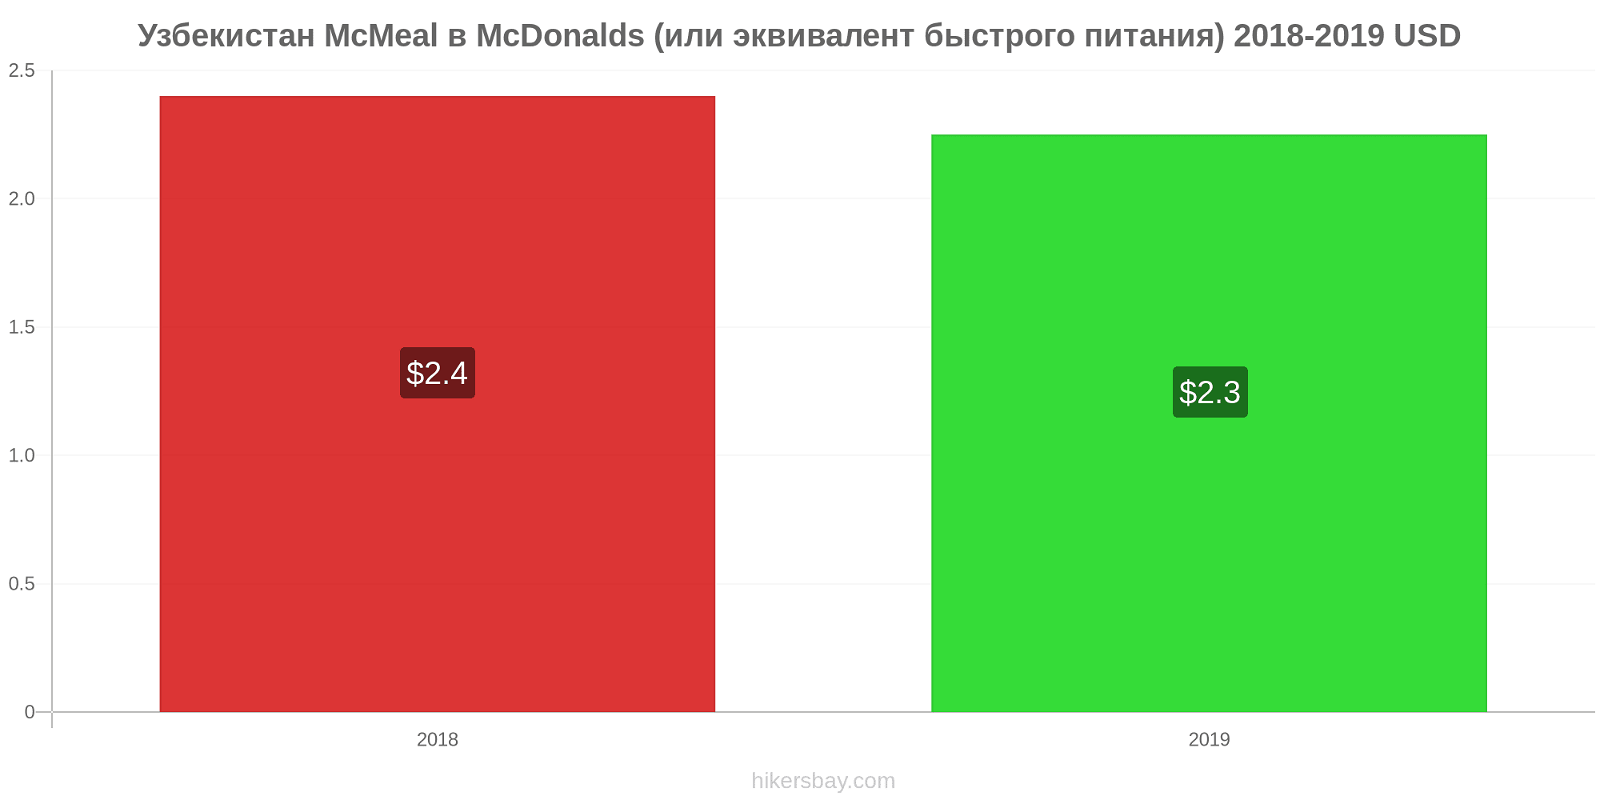 Узбекистан изменения цен McMeal в McDonalds (или эквивалент быстрого питания) hikersbay.com